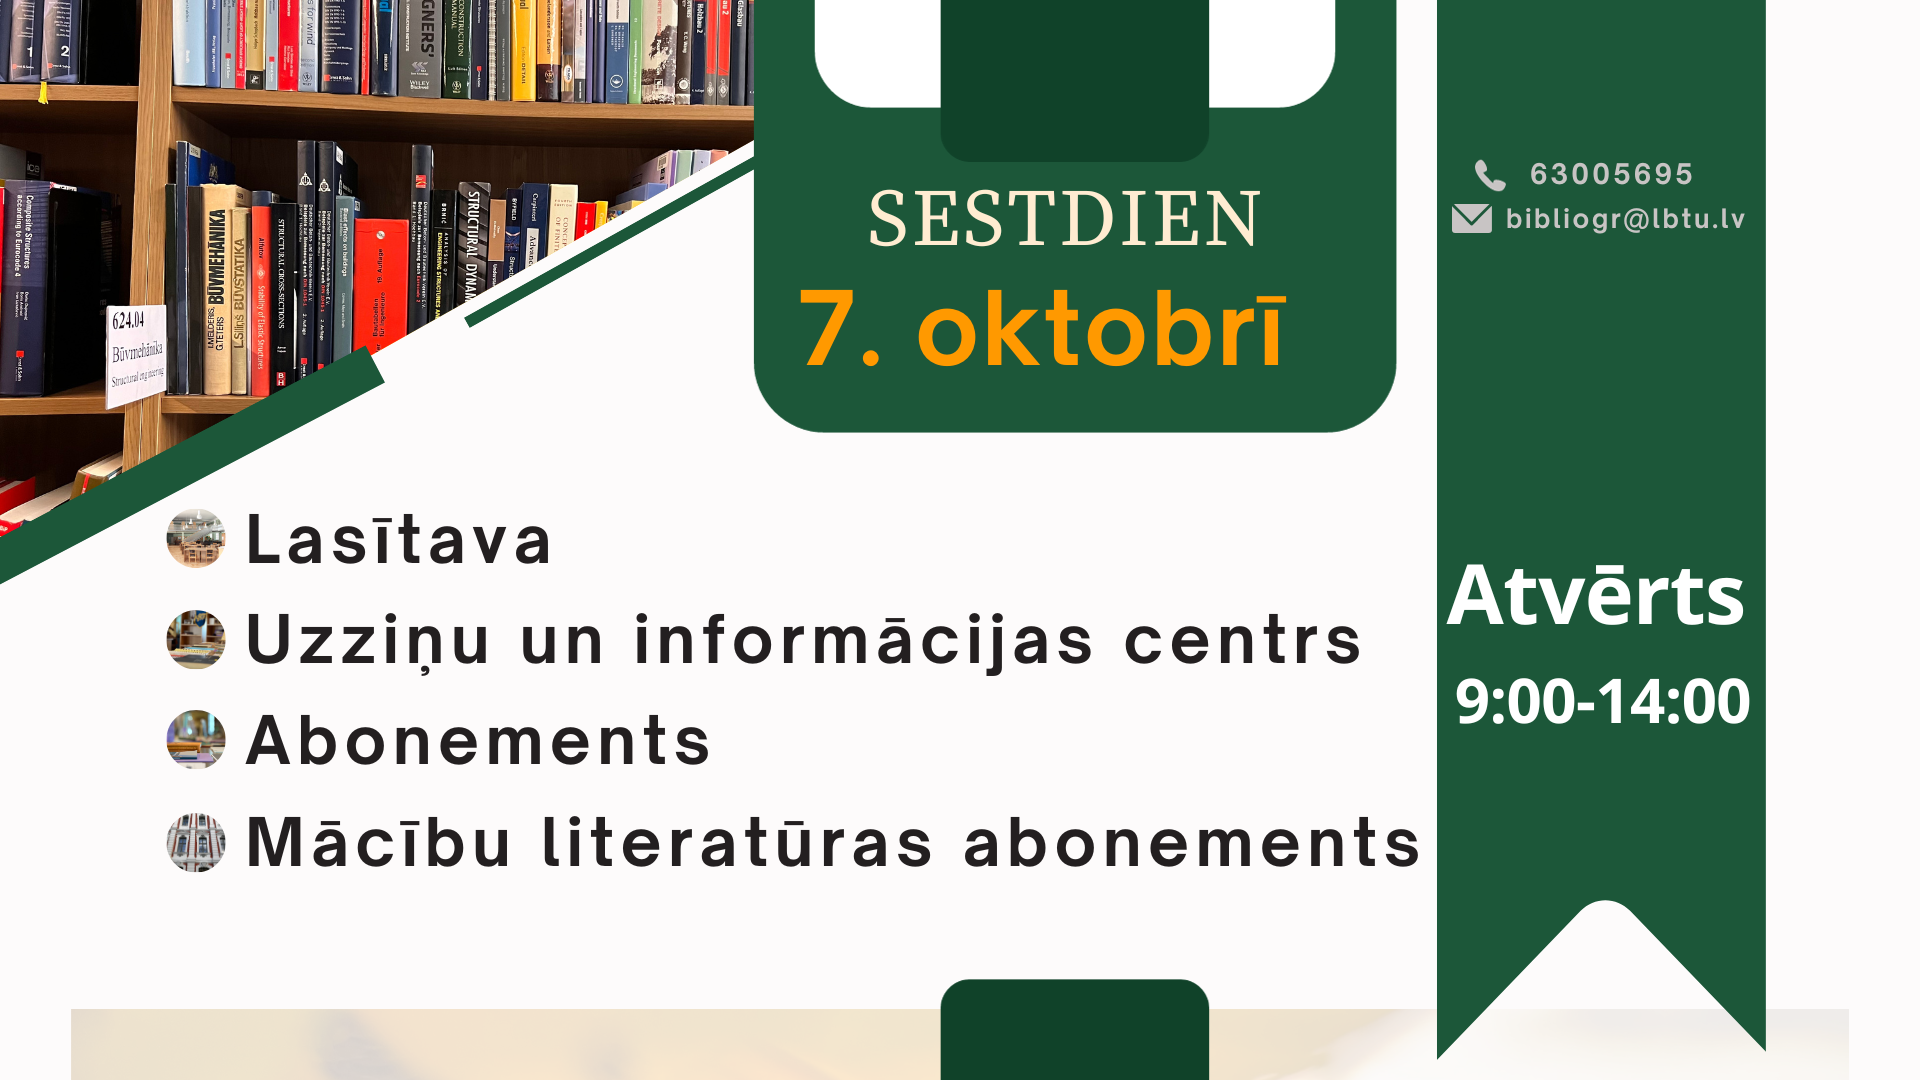 Sestdien, 7. oktobrī, LBTU Fundamentālā bibliotēka lasītājiem atvērta no plkst. 9.00 līdz 14.00